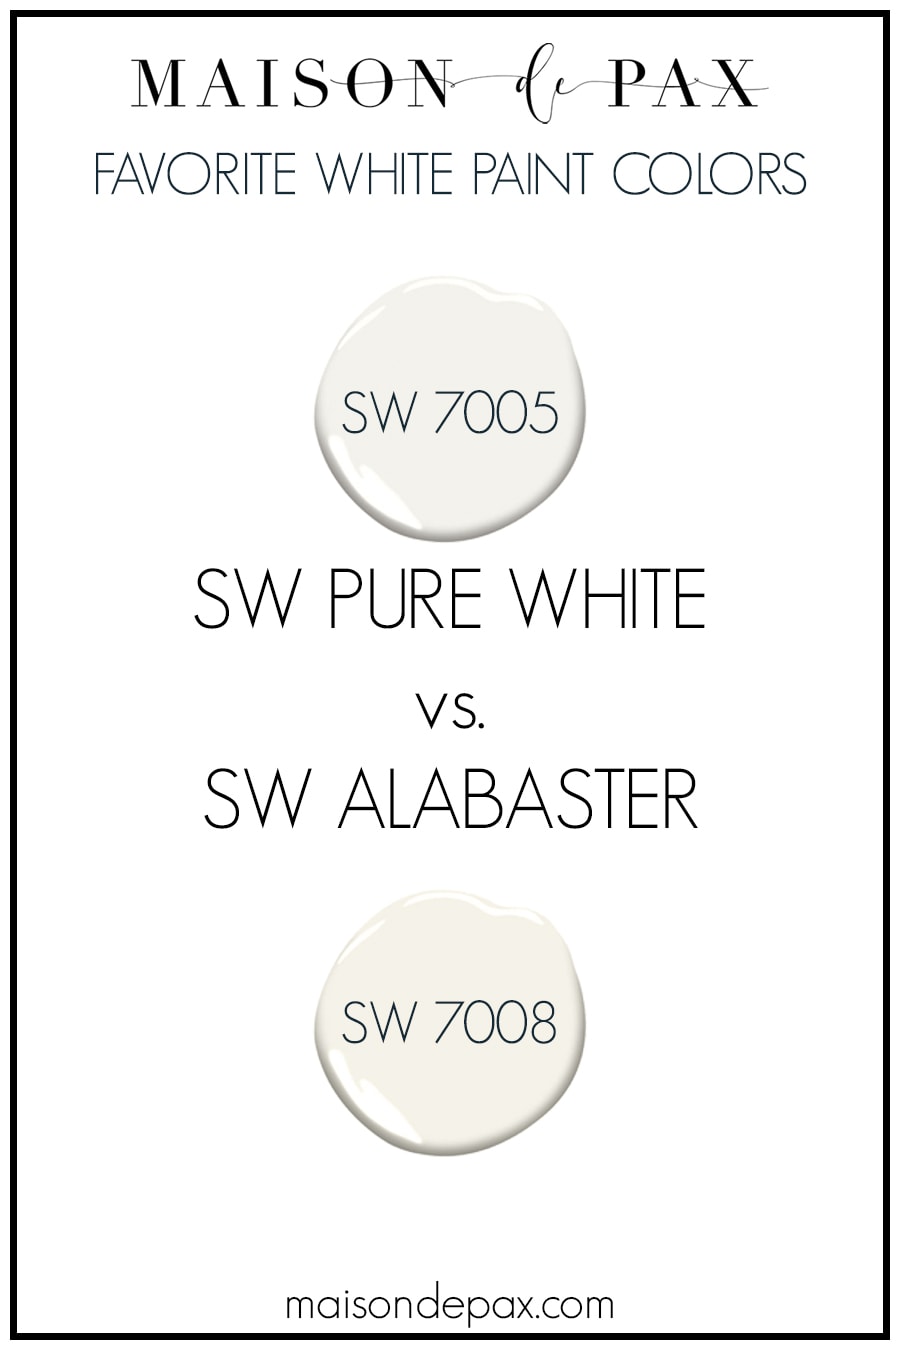 sw pure white vs alabaster